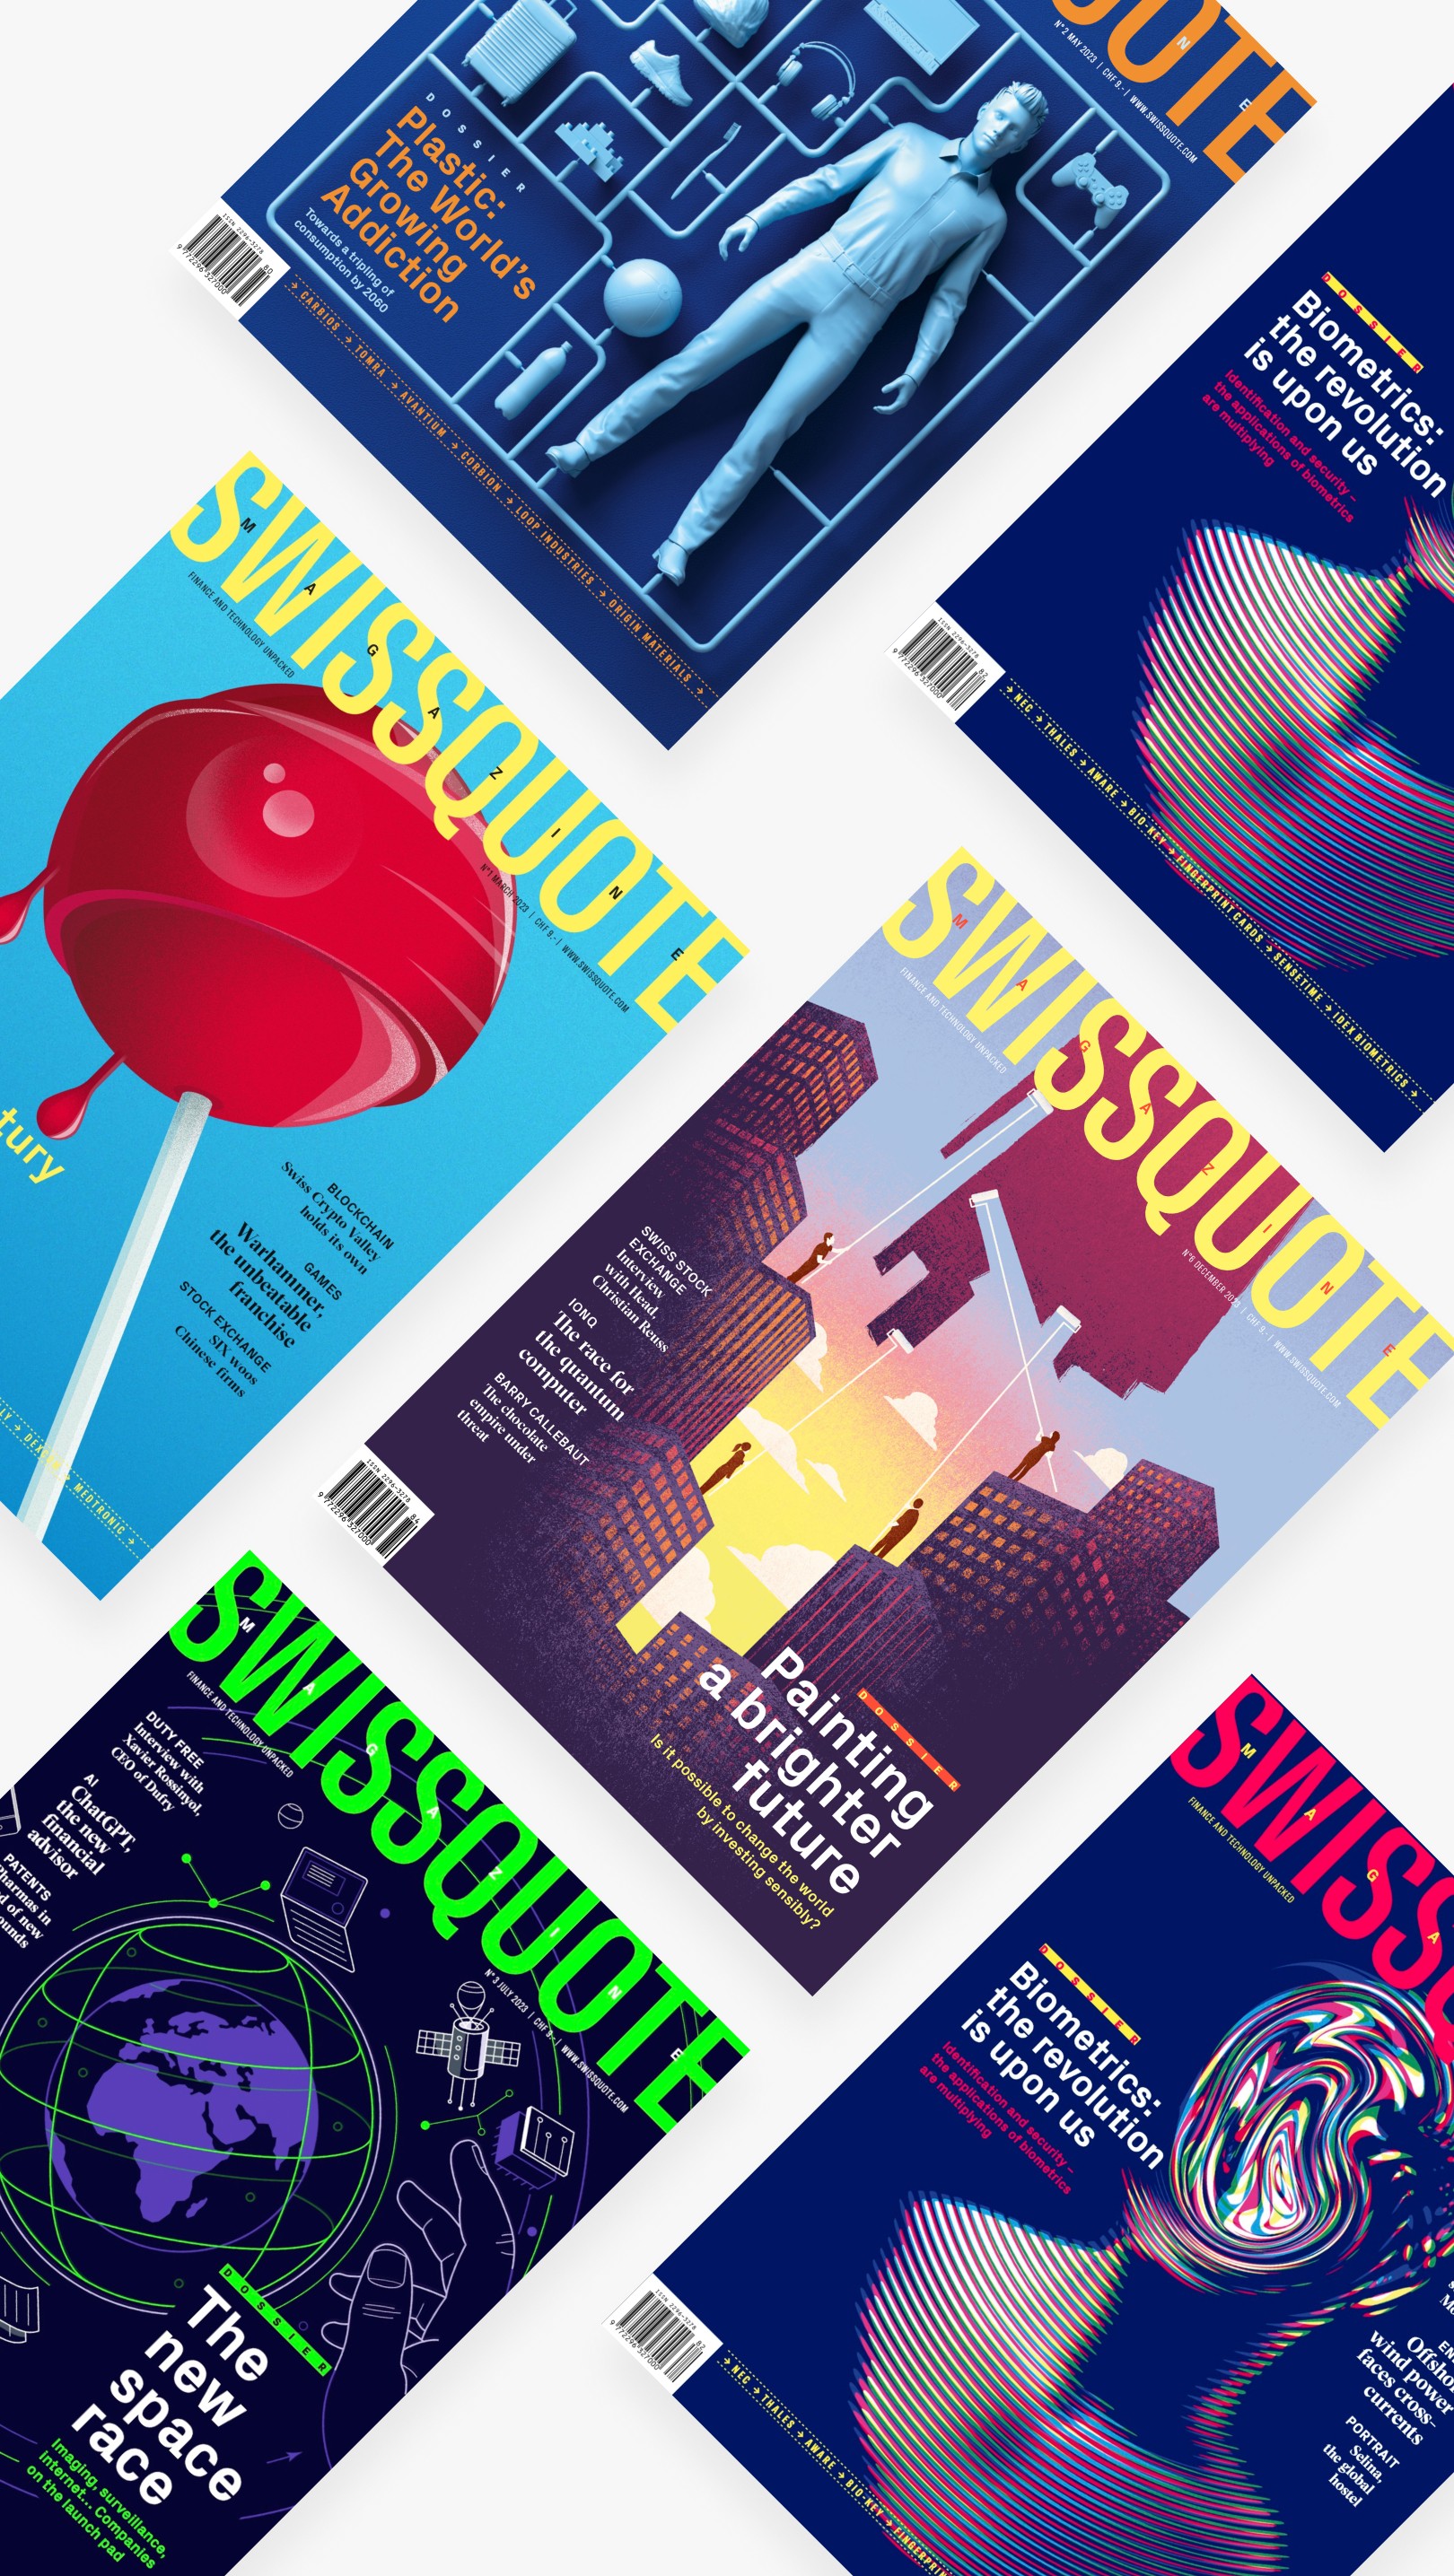 Swissquote magazines 